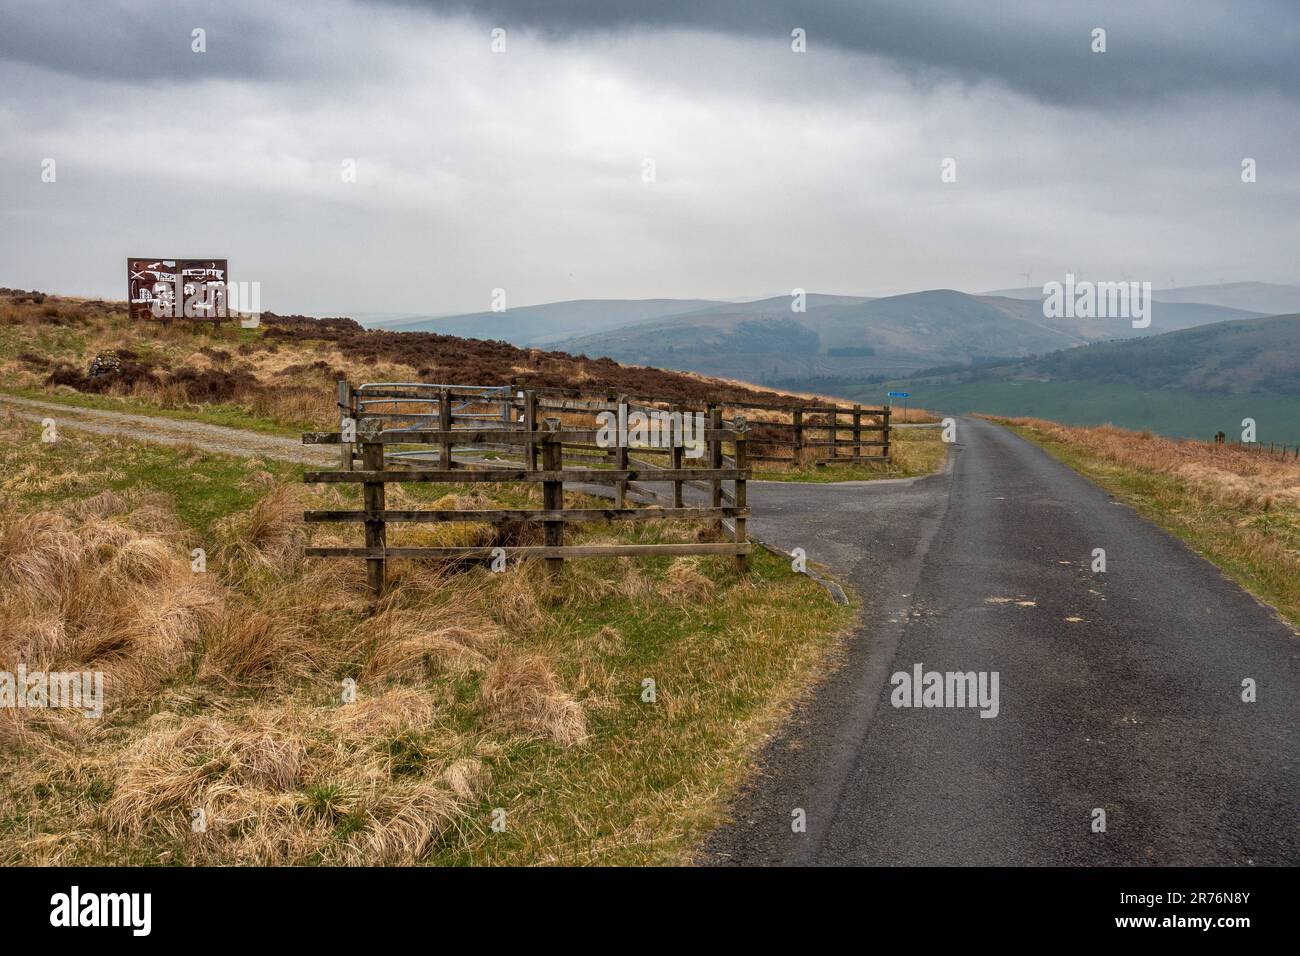 Einspurige Straße auf dem Weg nach Langholm mit dem MacDiarmid Memorial auf dem Hügel auf der linken Seite. Dumfries & Galloway, Schottland, Großbritannien Stockfoto